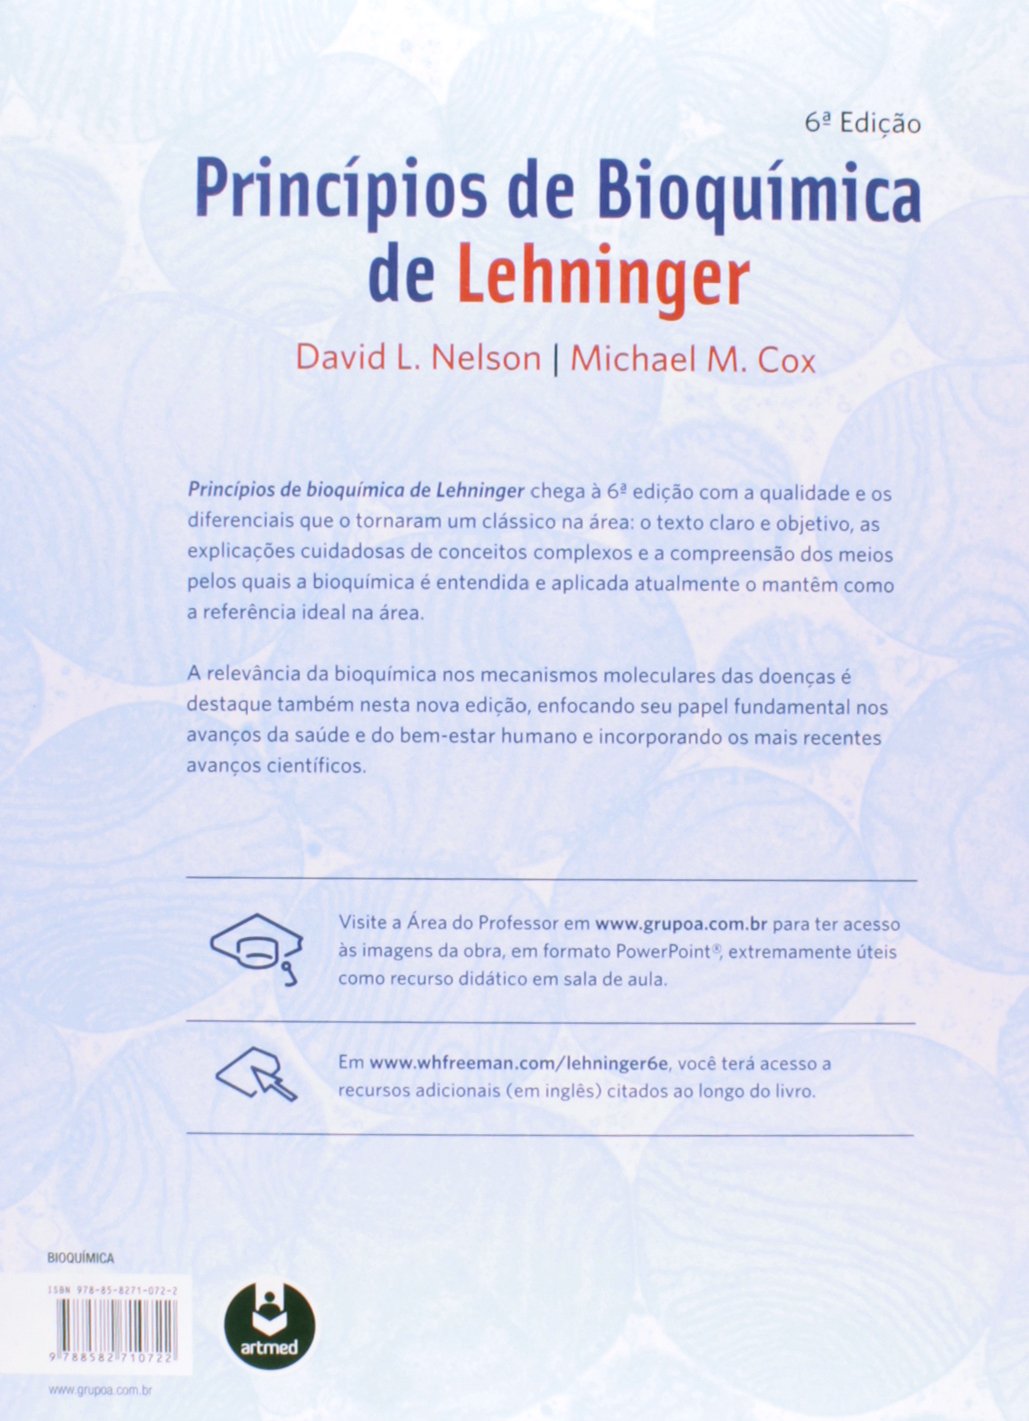 bioquimica lehninger descargar pdf